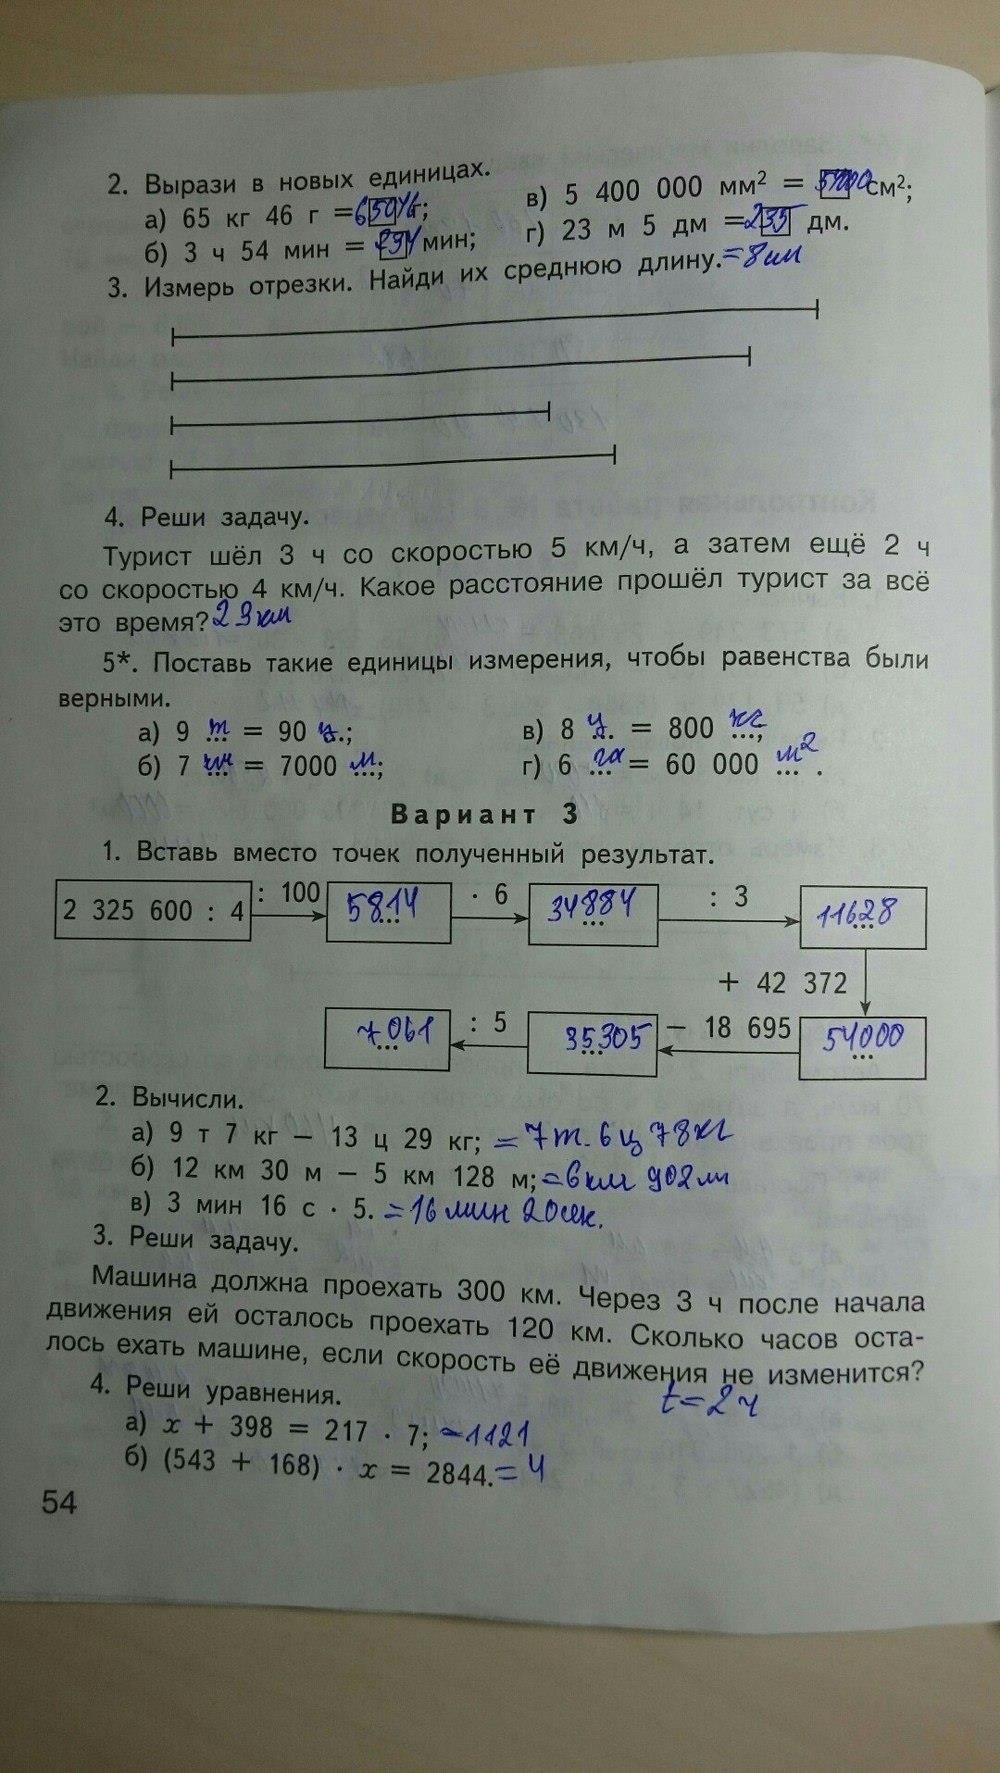 гдз 4 класс контрольно-измерительные материалы страница 54 математика Ситникова